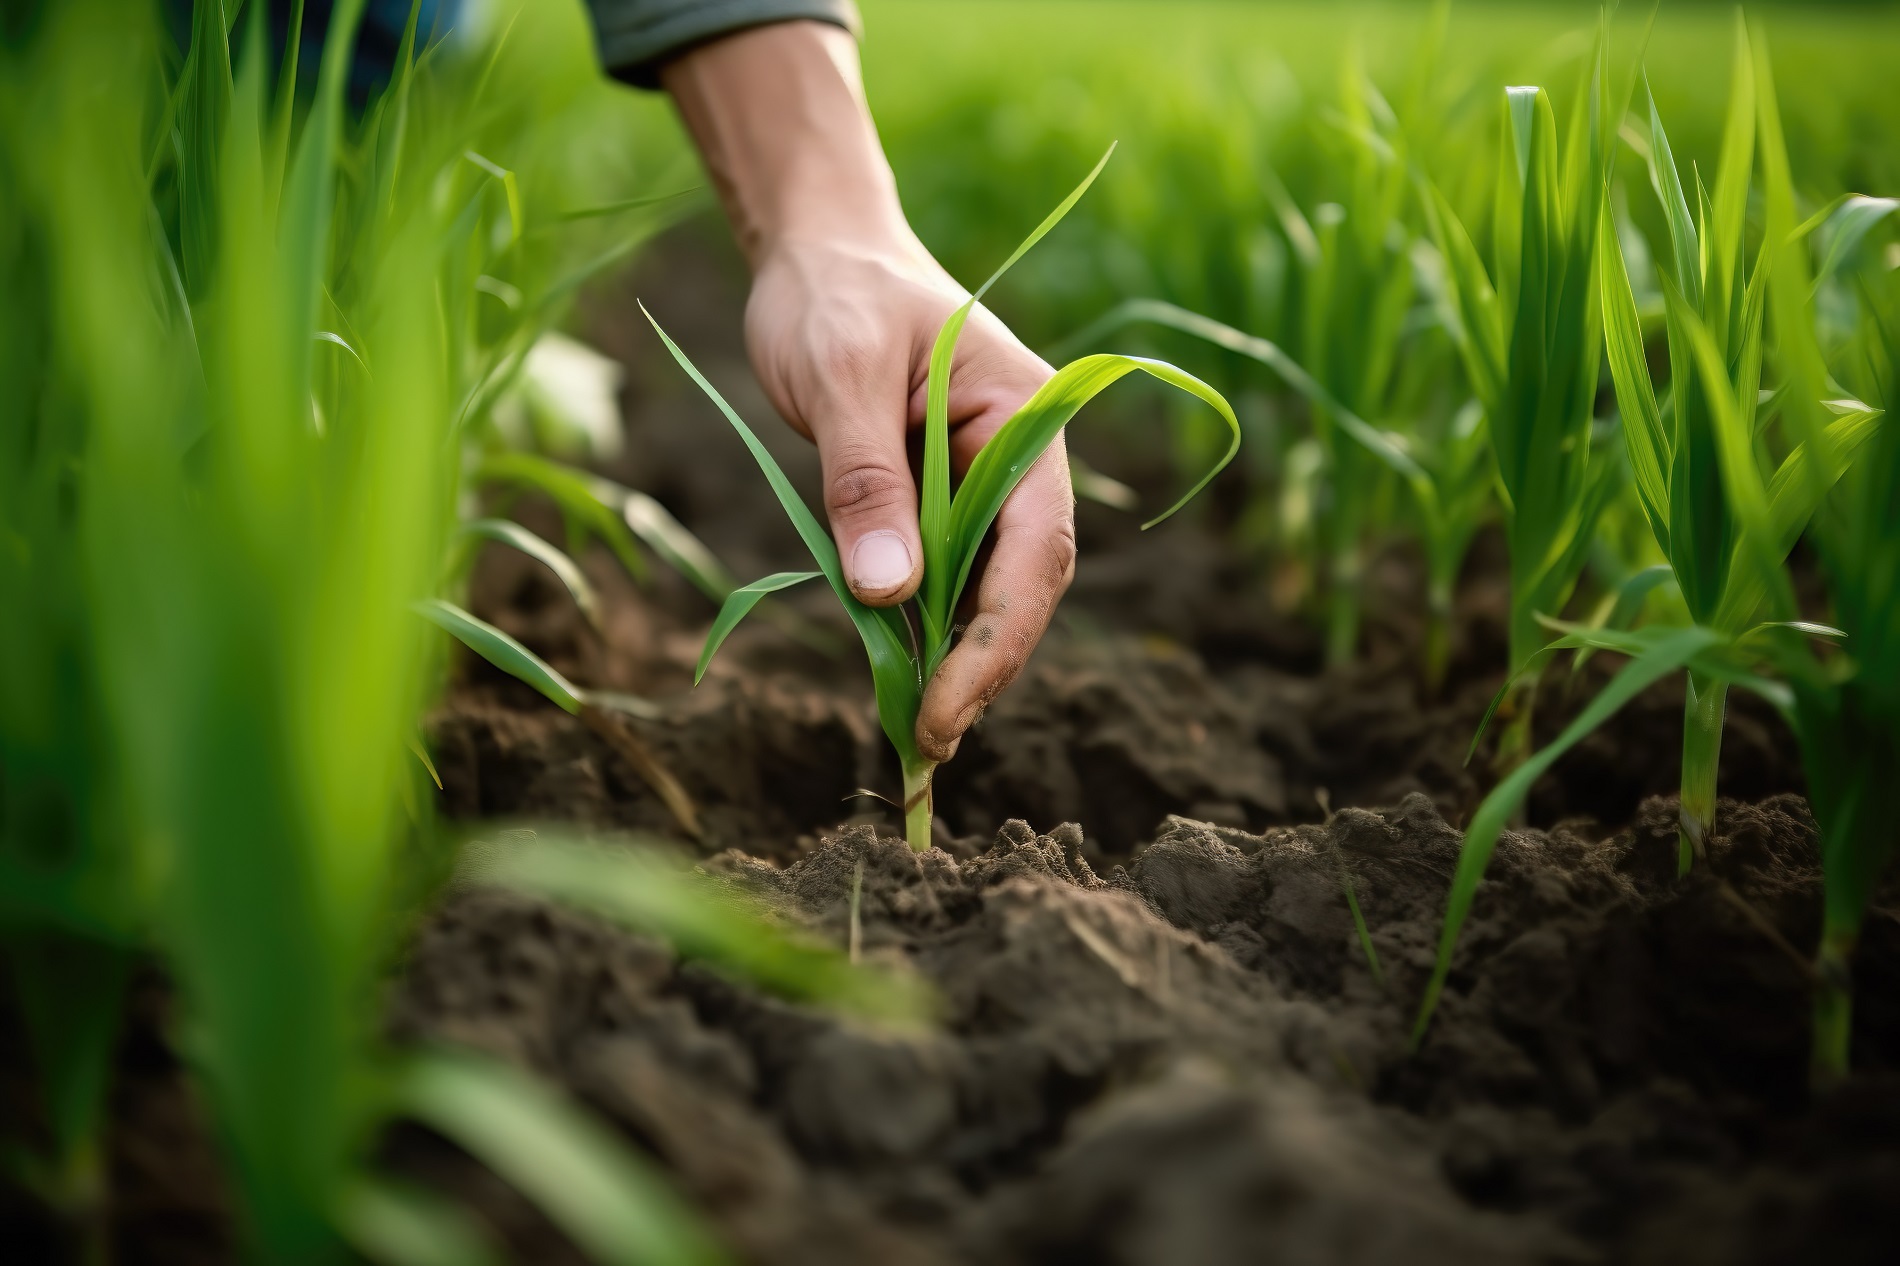 Realiza un uso responsable y seguro de tus productos fitosanitarios y soluciones de sanidad vegetal